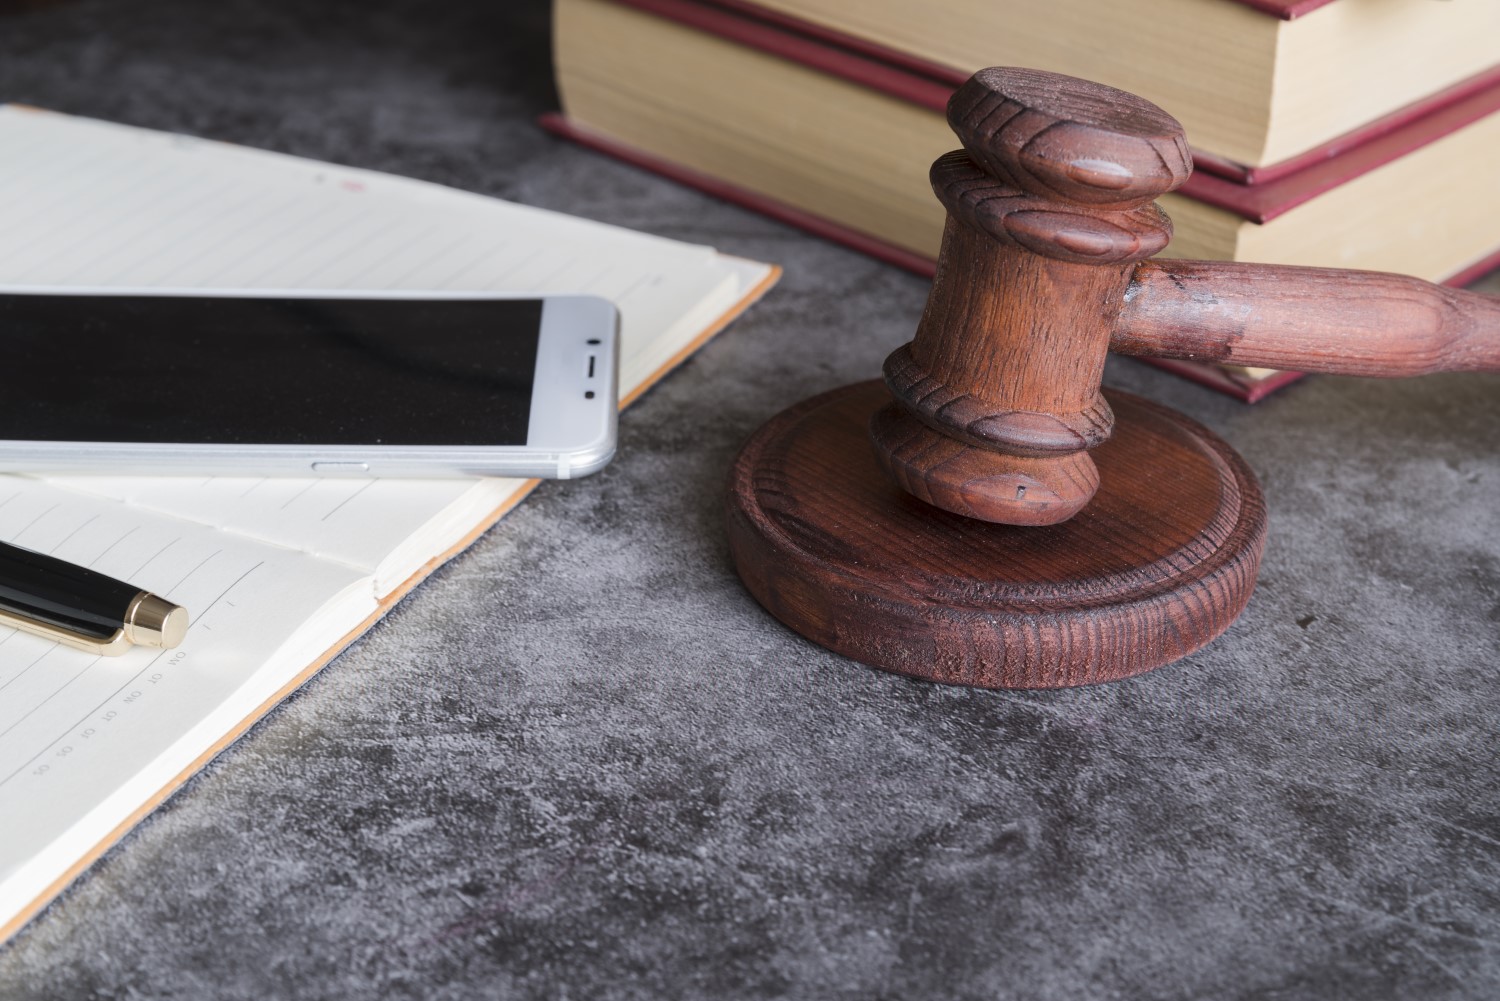 Fotografia colorida de martelo de juiz, smartphone e livros jurídicos.